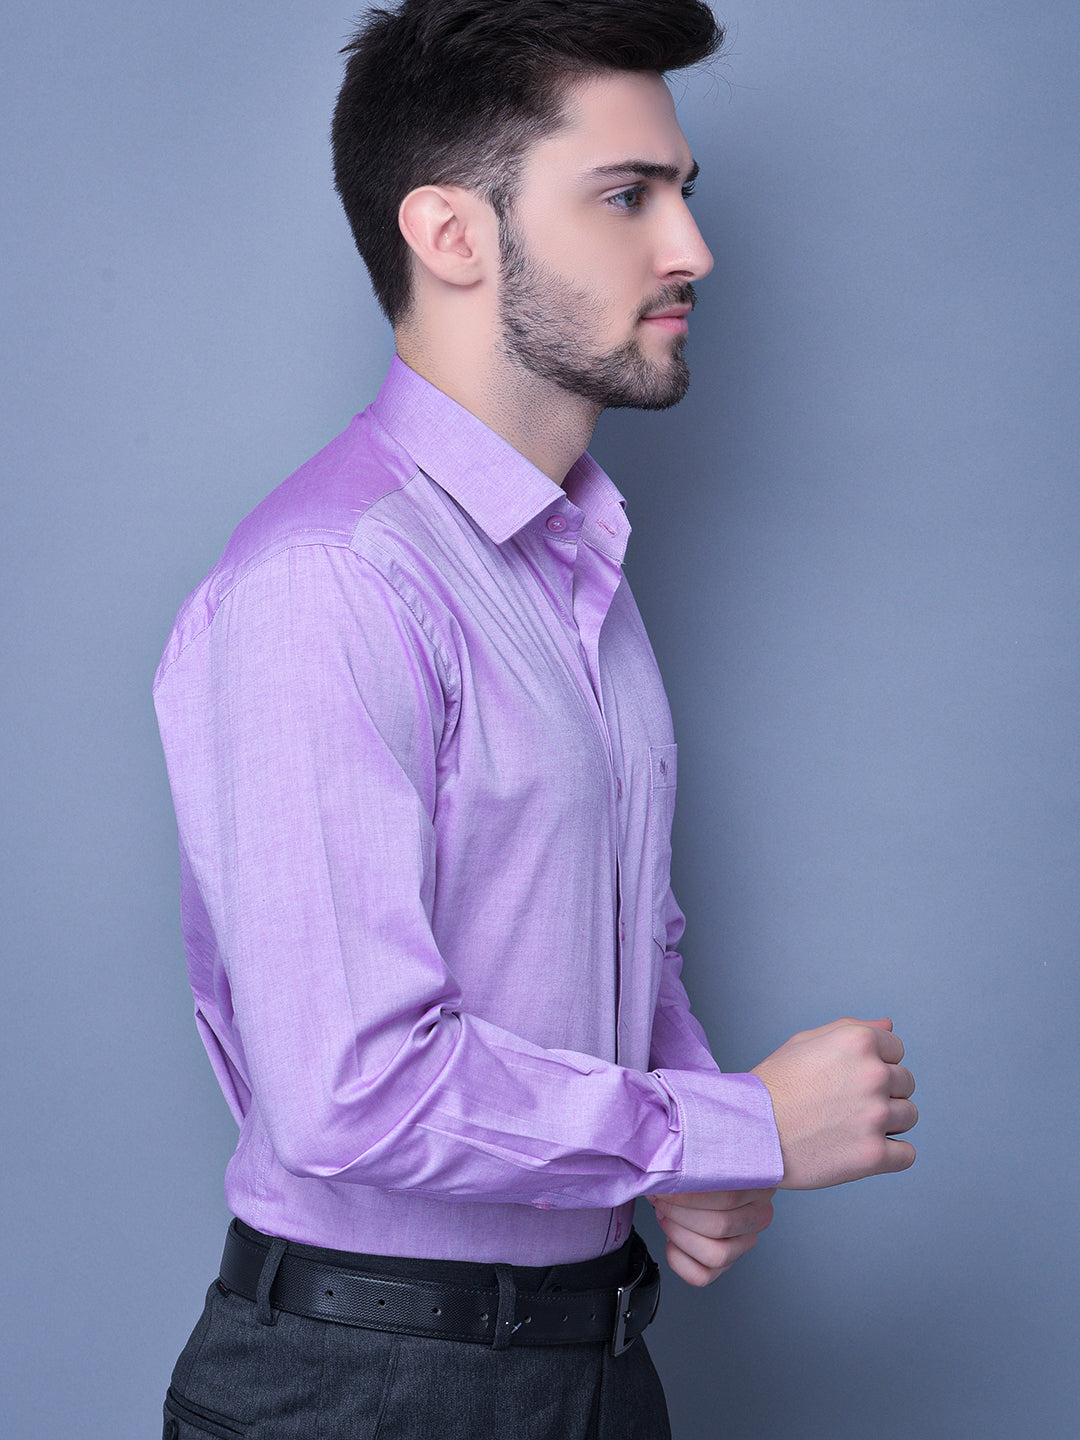 Cobb Purple Shirt Collar Smart Fit Formal Shirt